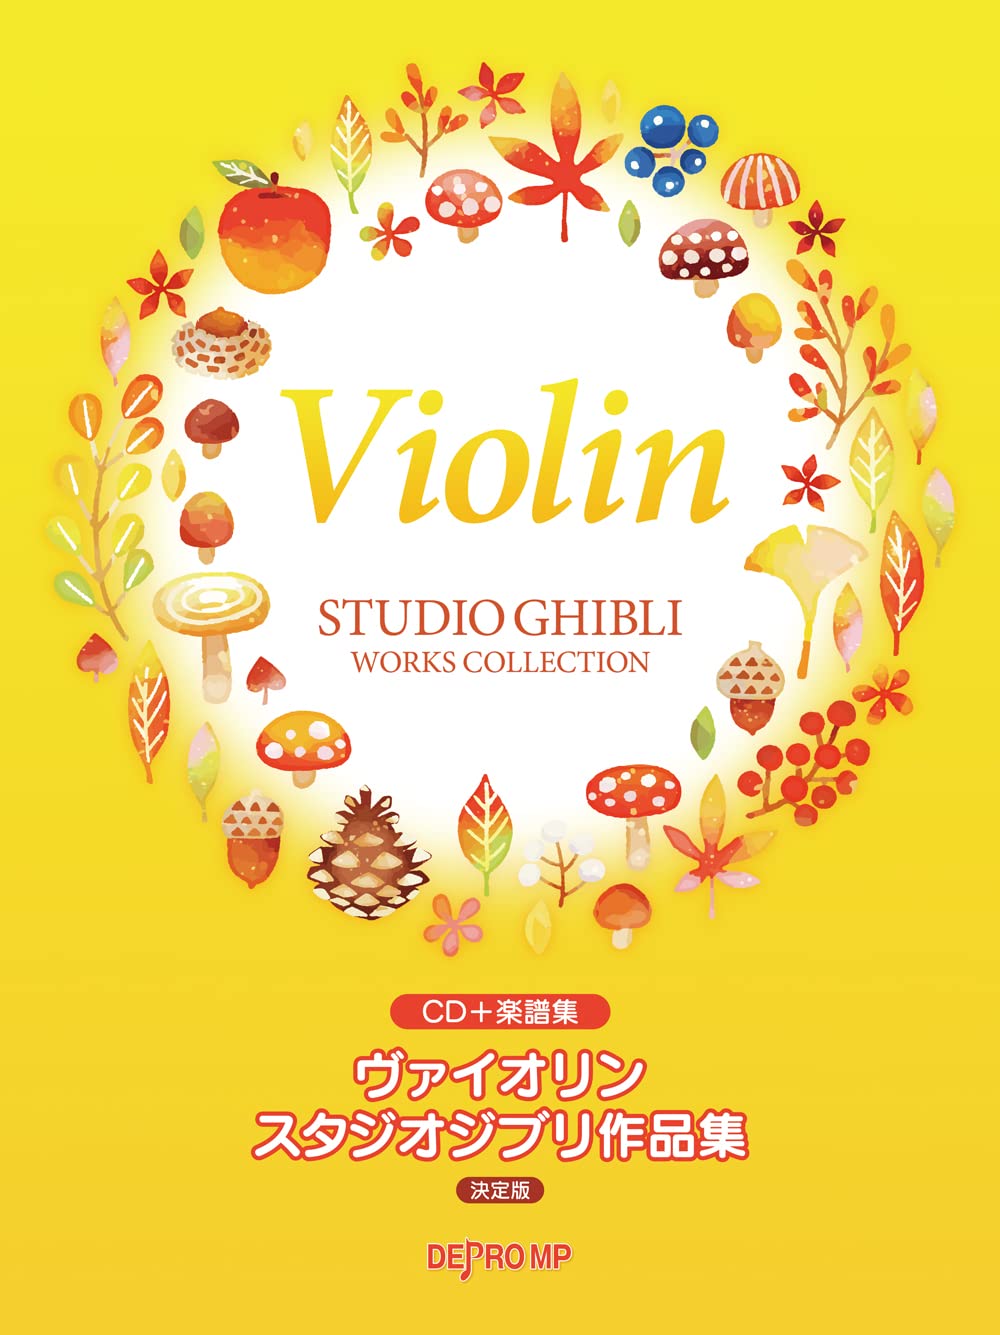 Studio Ghibli Collection Violin Solo w/CD(Piano accompaniment Tracks)